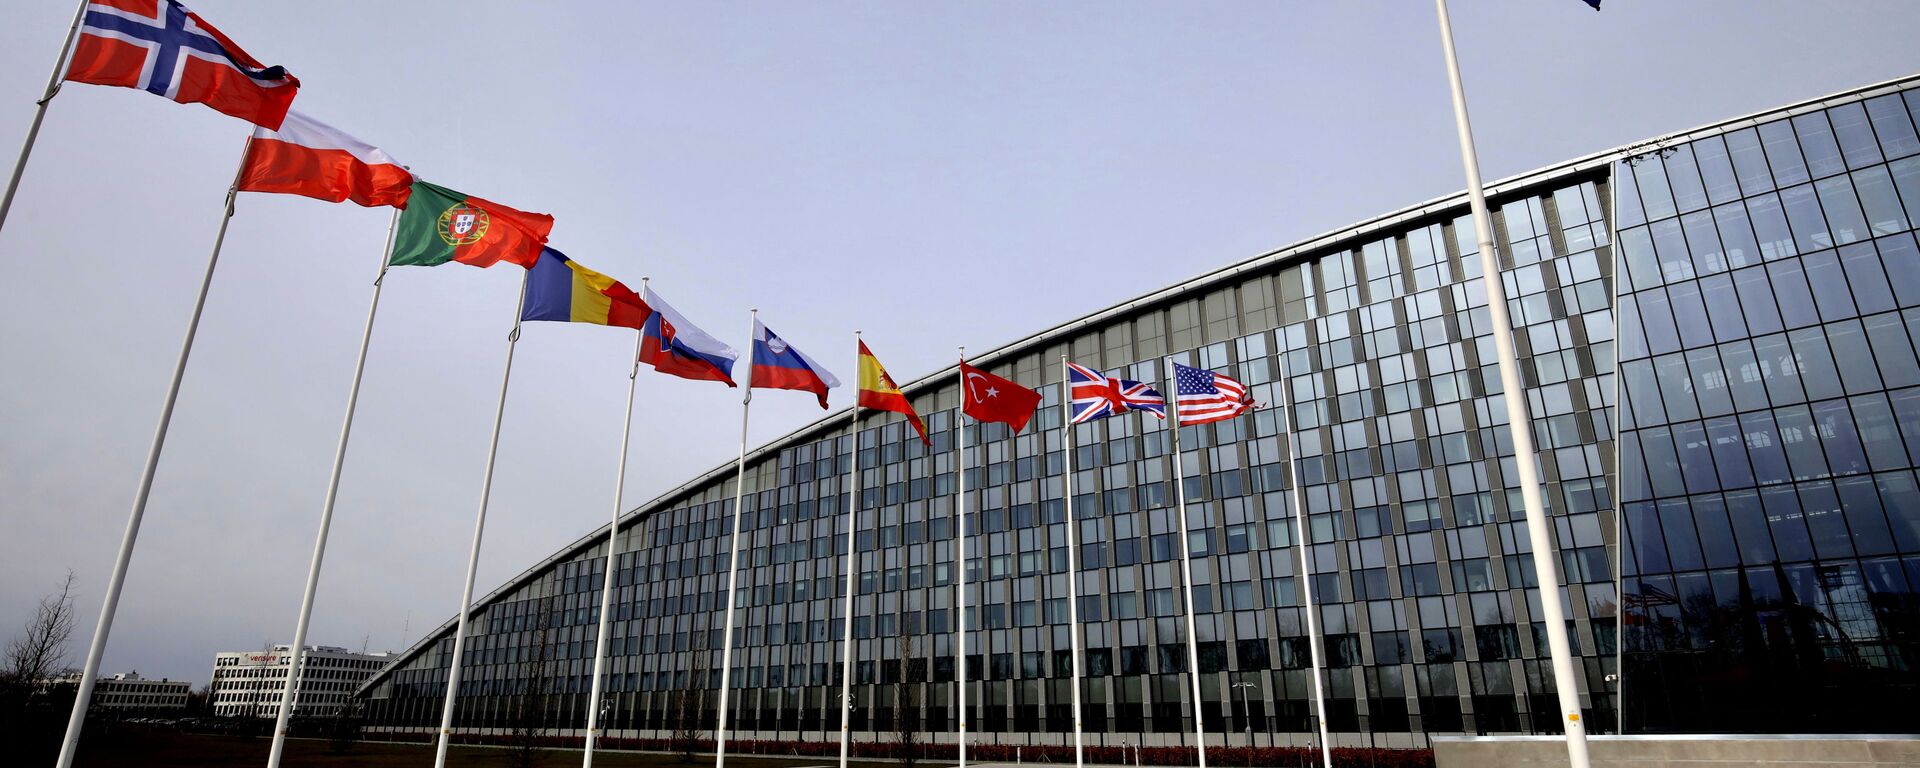 La sede de la OTAN en Bruselas y banderas de algunos países miembros - Sputnik Mundo, 1920, 08.10.2021